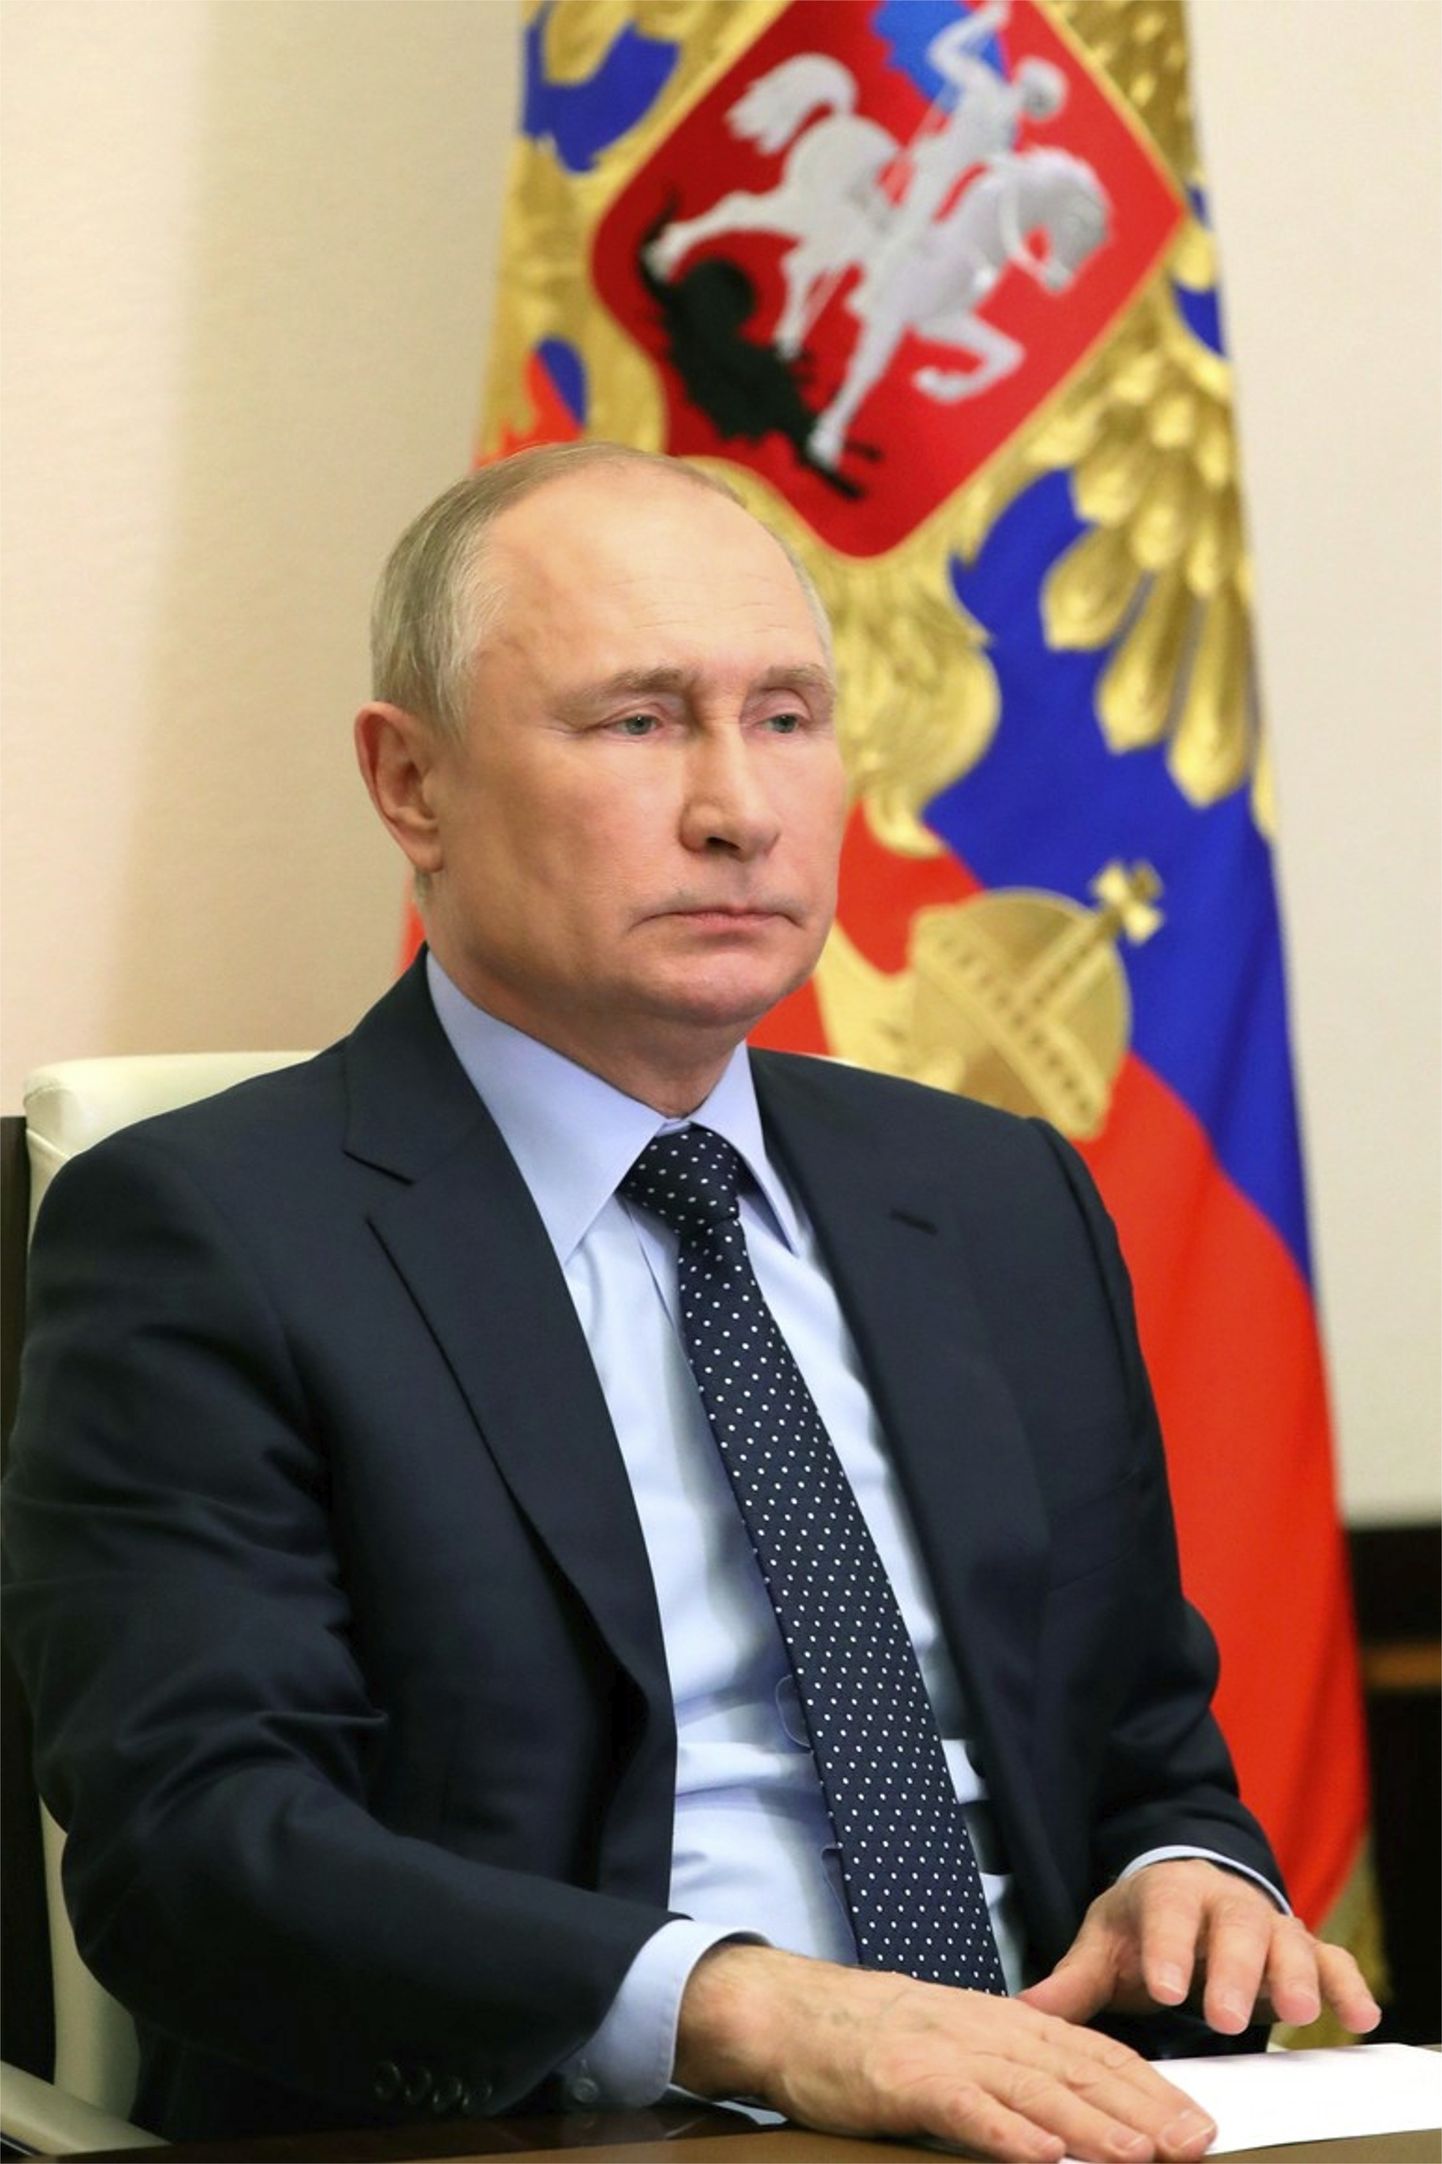 Venemaa president Vladimir Putin 15. aprillil 2022 Moskva-lähedases Novo-Ogarjovo residentsis videokonverentsil Venemaa julgeolekunõukogu liikmetega